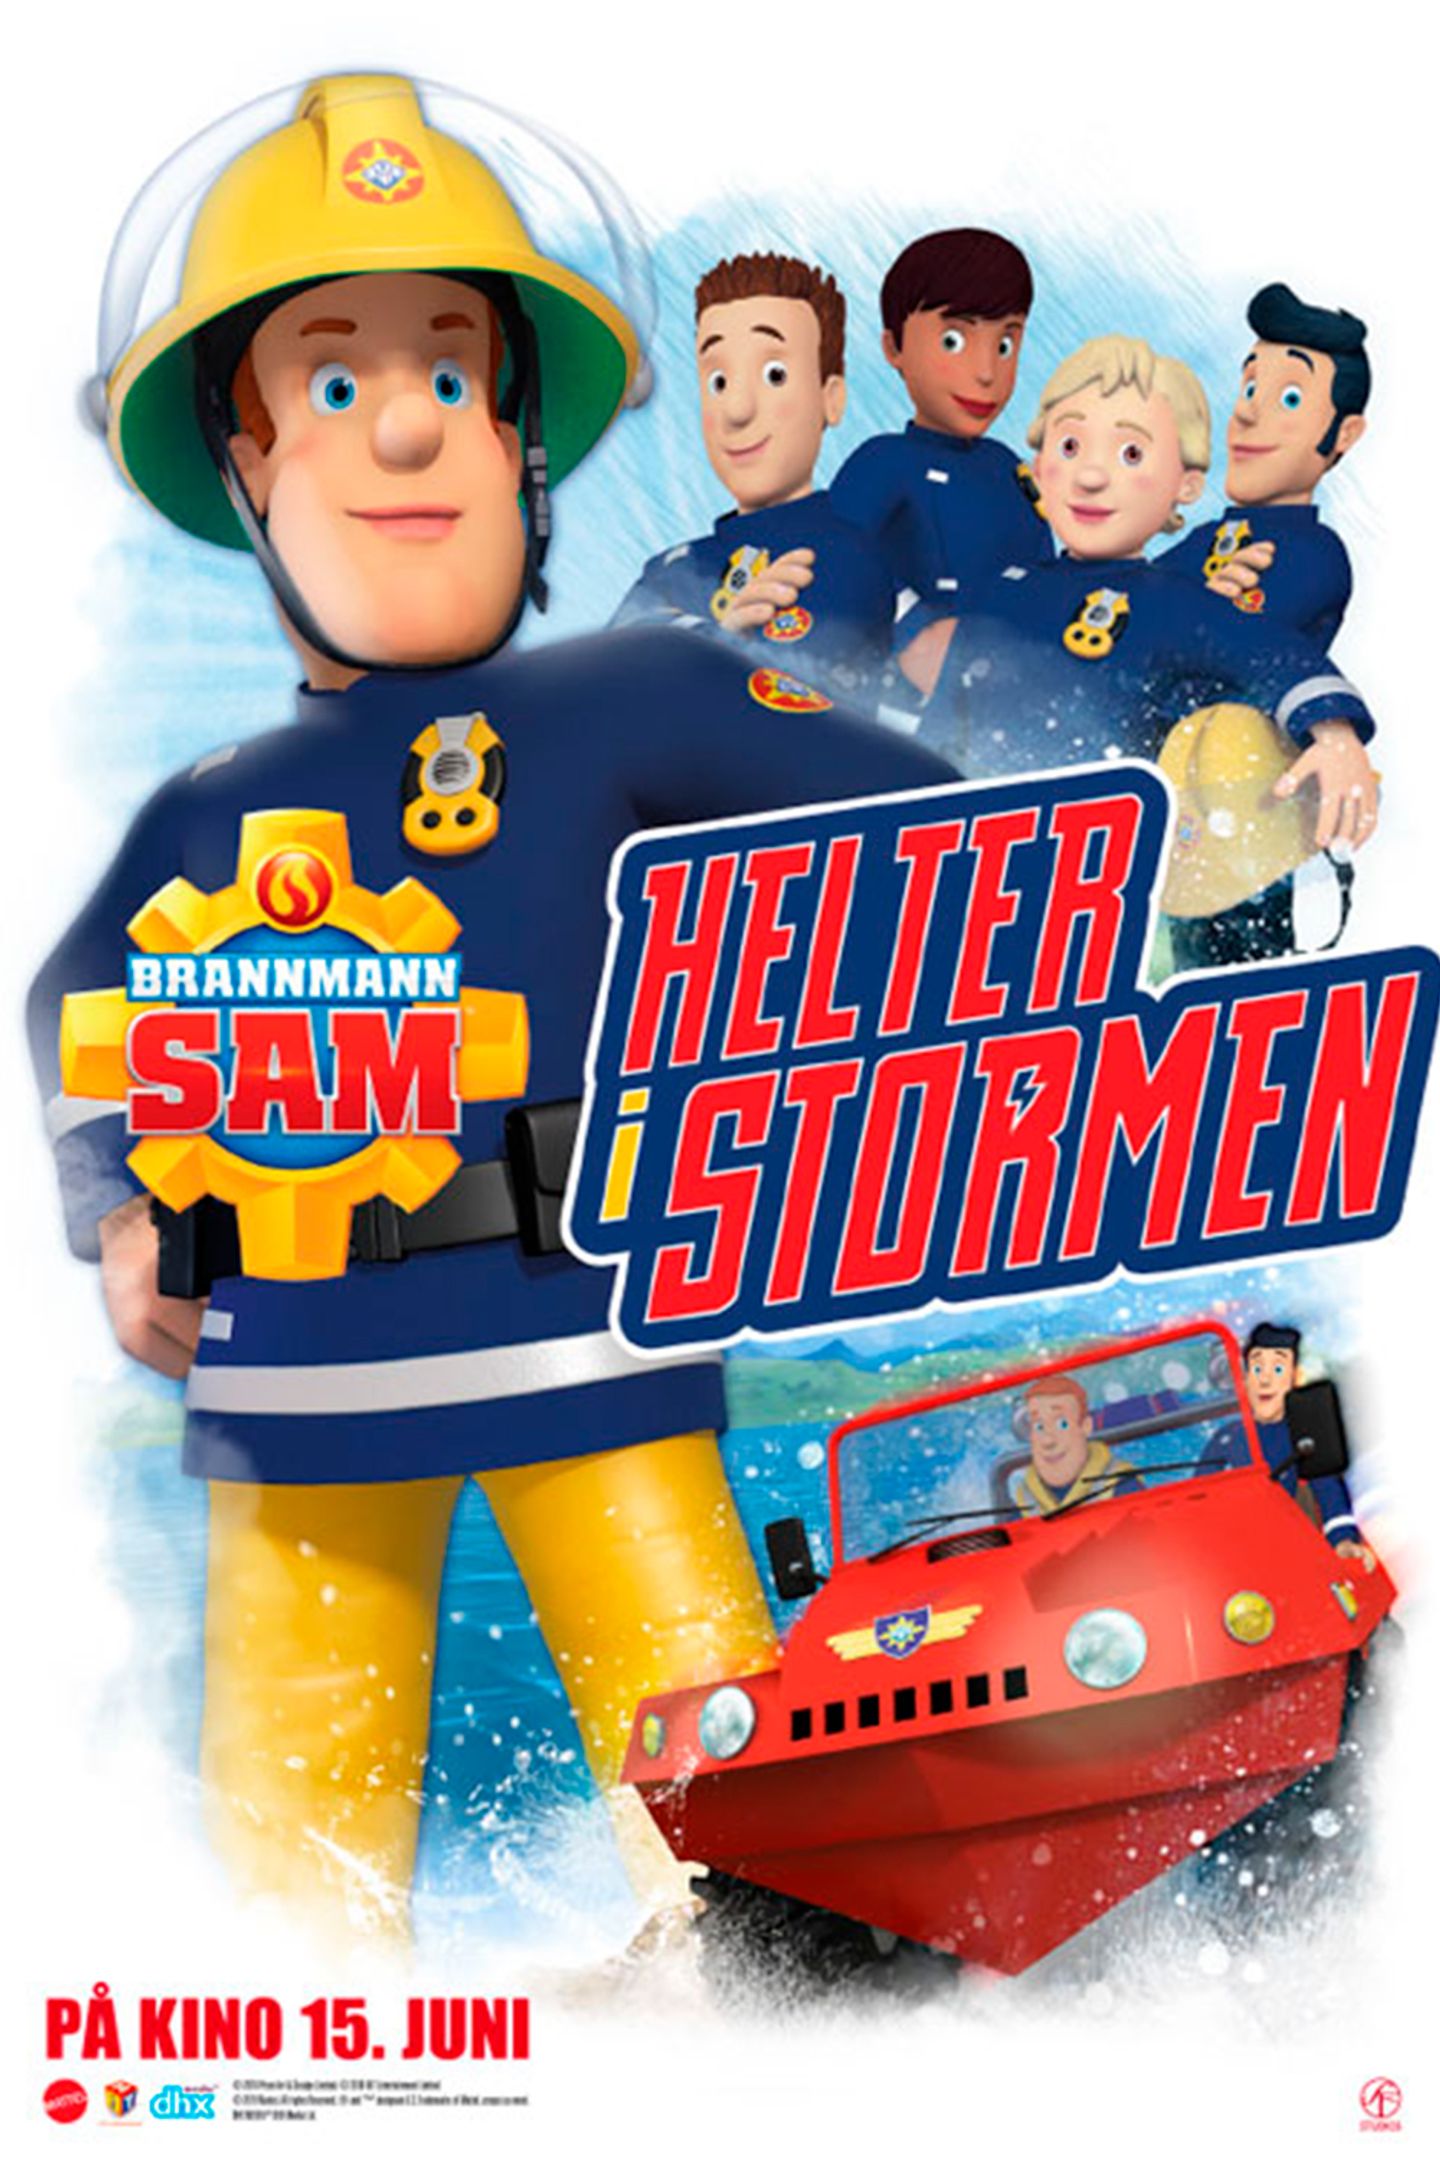 Plakat for 'Brannmann Sam: Helter i Stormen'